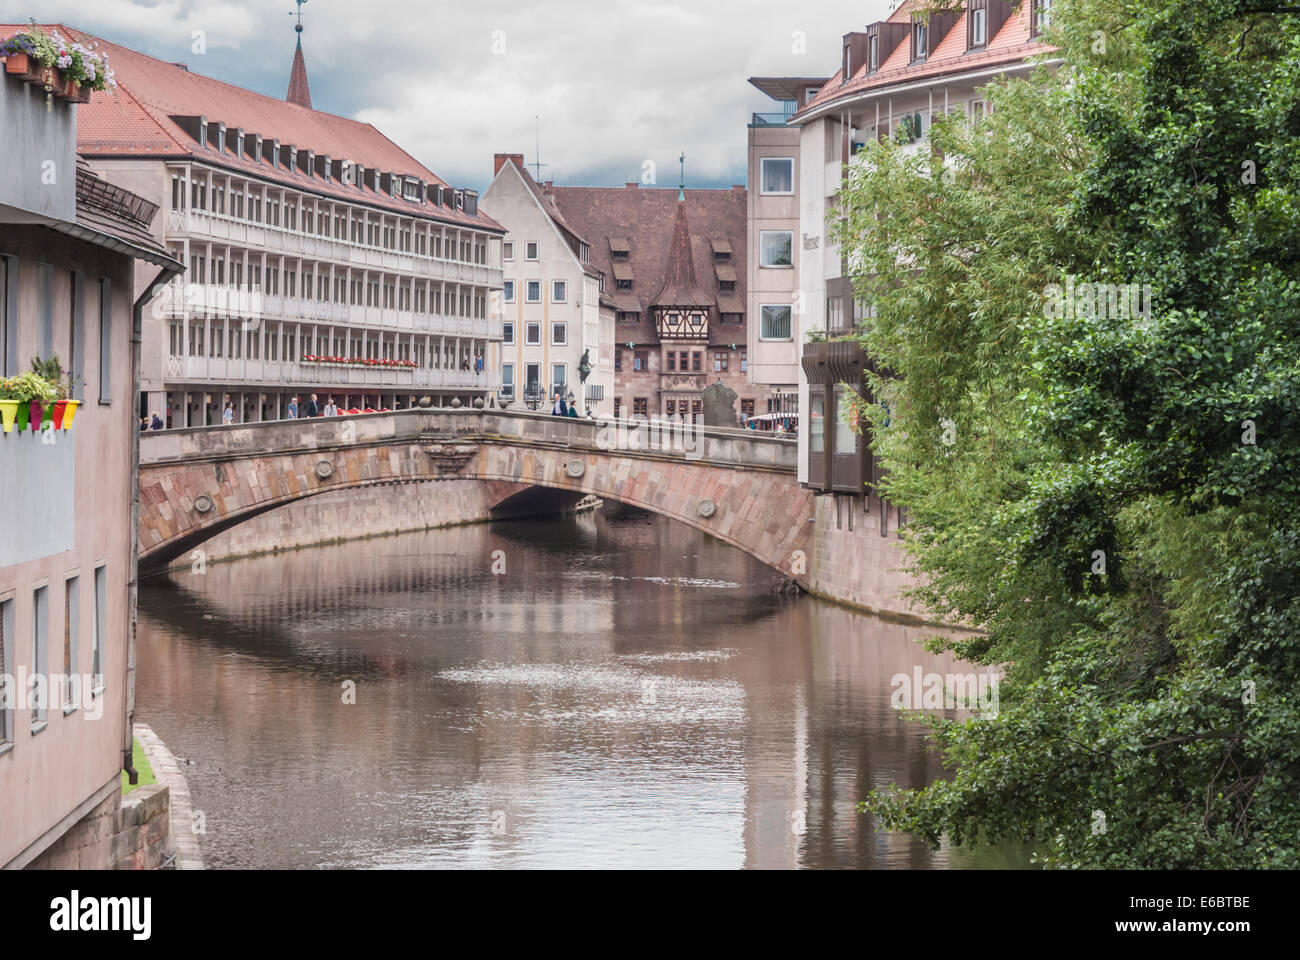 Fleisch Bridge, Nuremberg Stock Photo